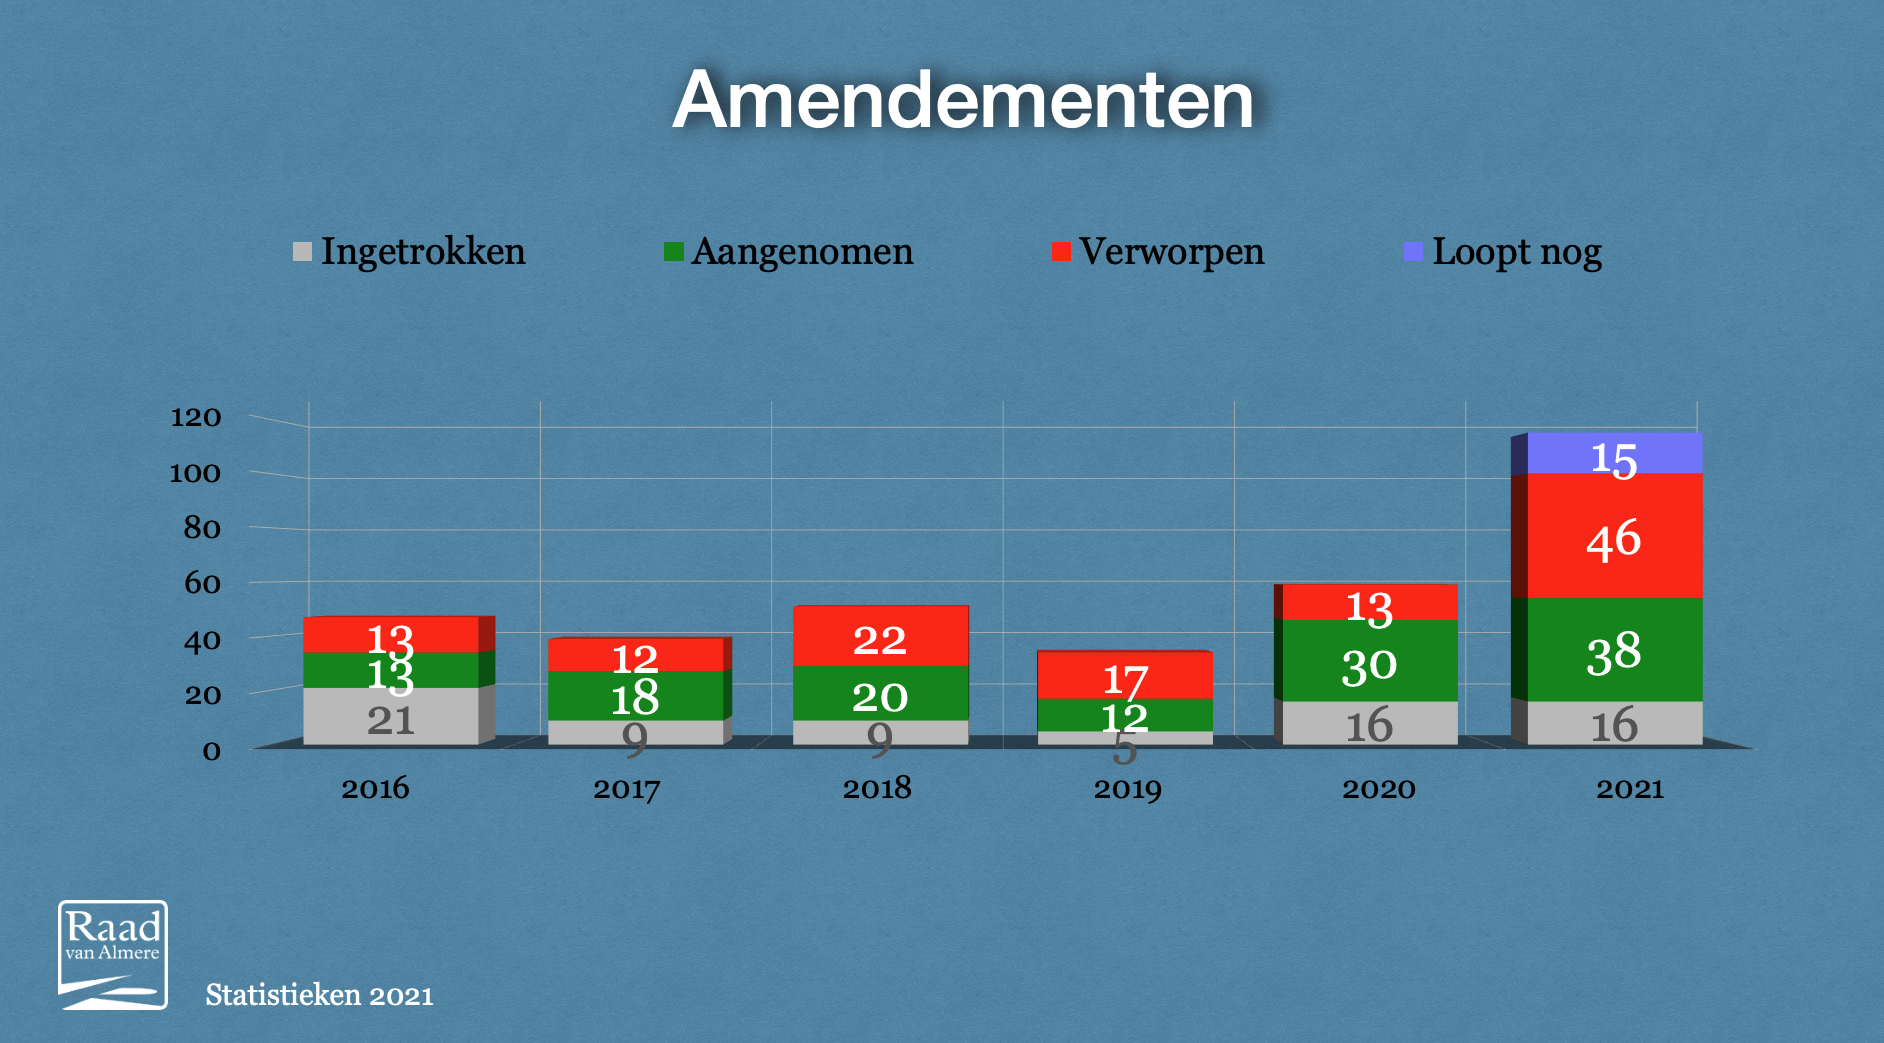 Amendementen 2021